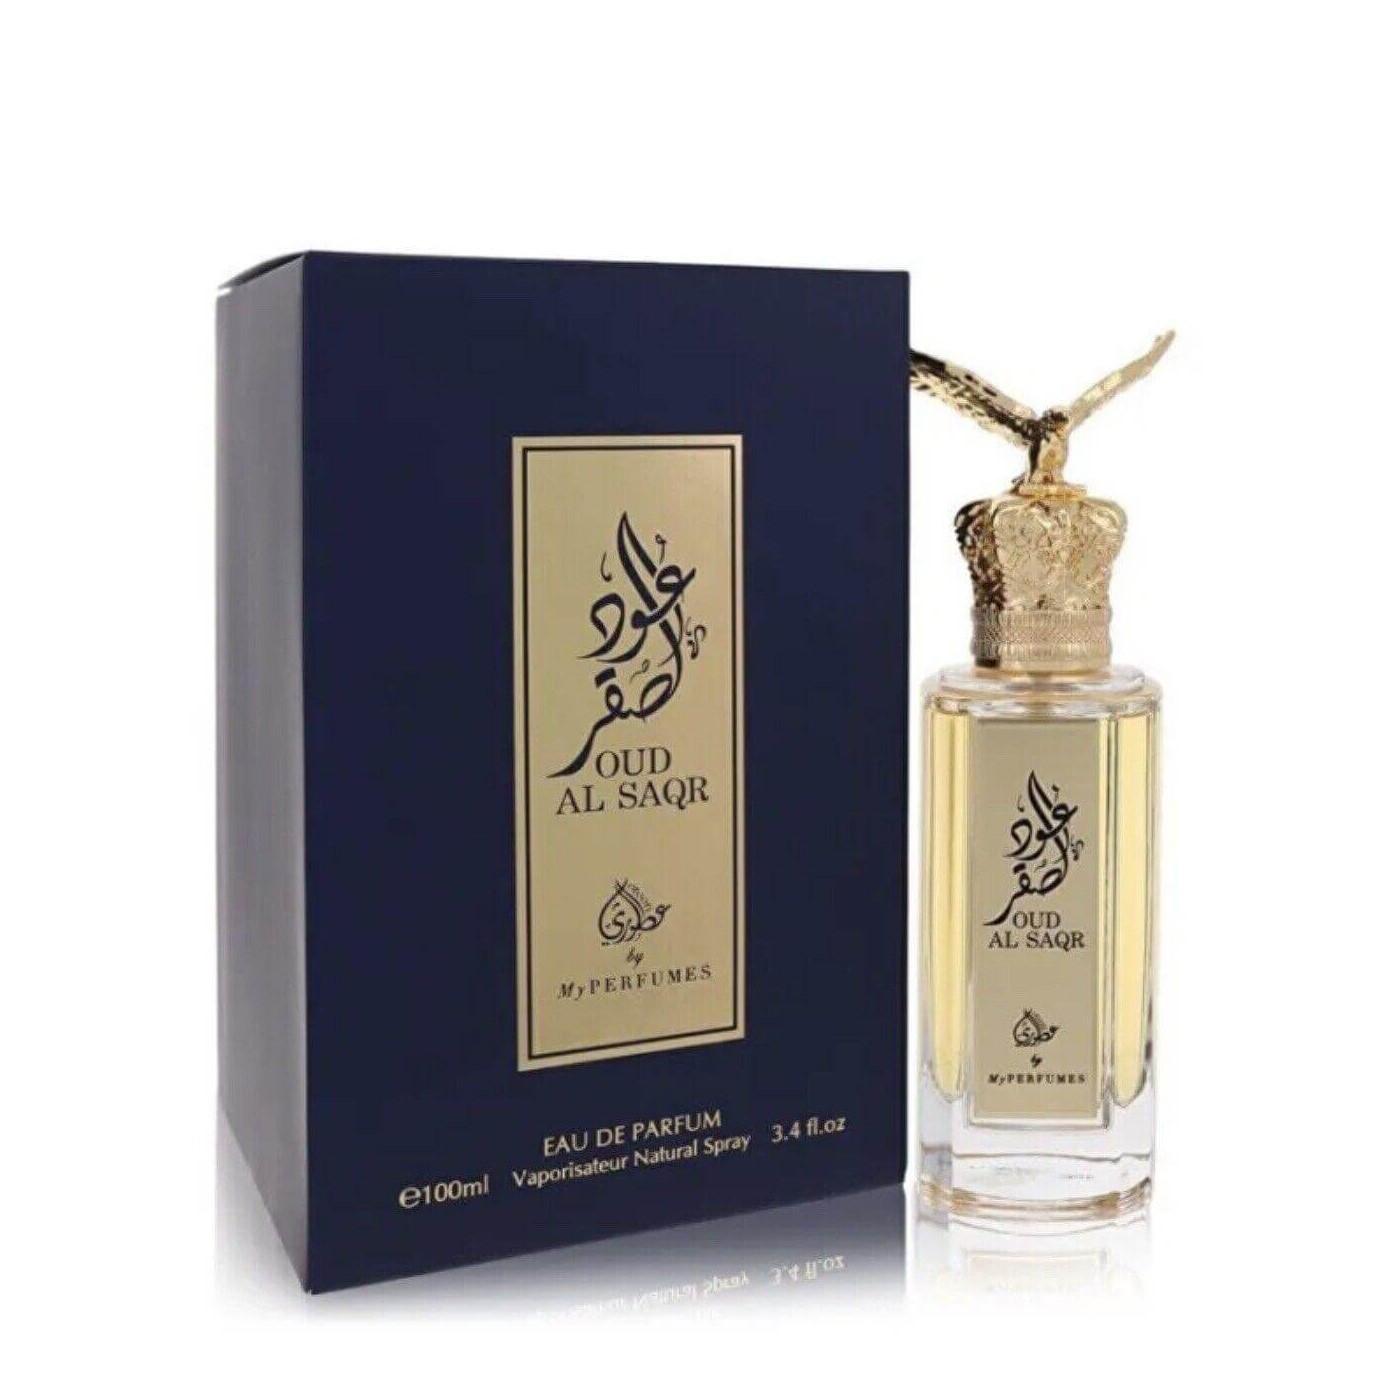 Oud Al Saqr Perfume Eau De Parfum 100Ml Edp By My Perfumes